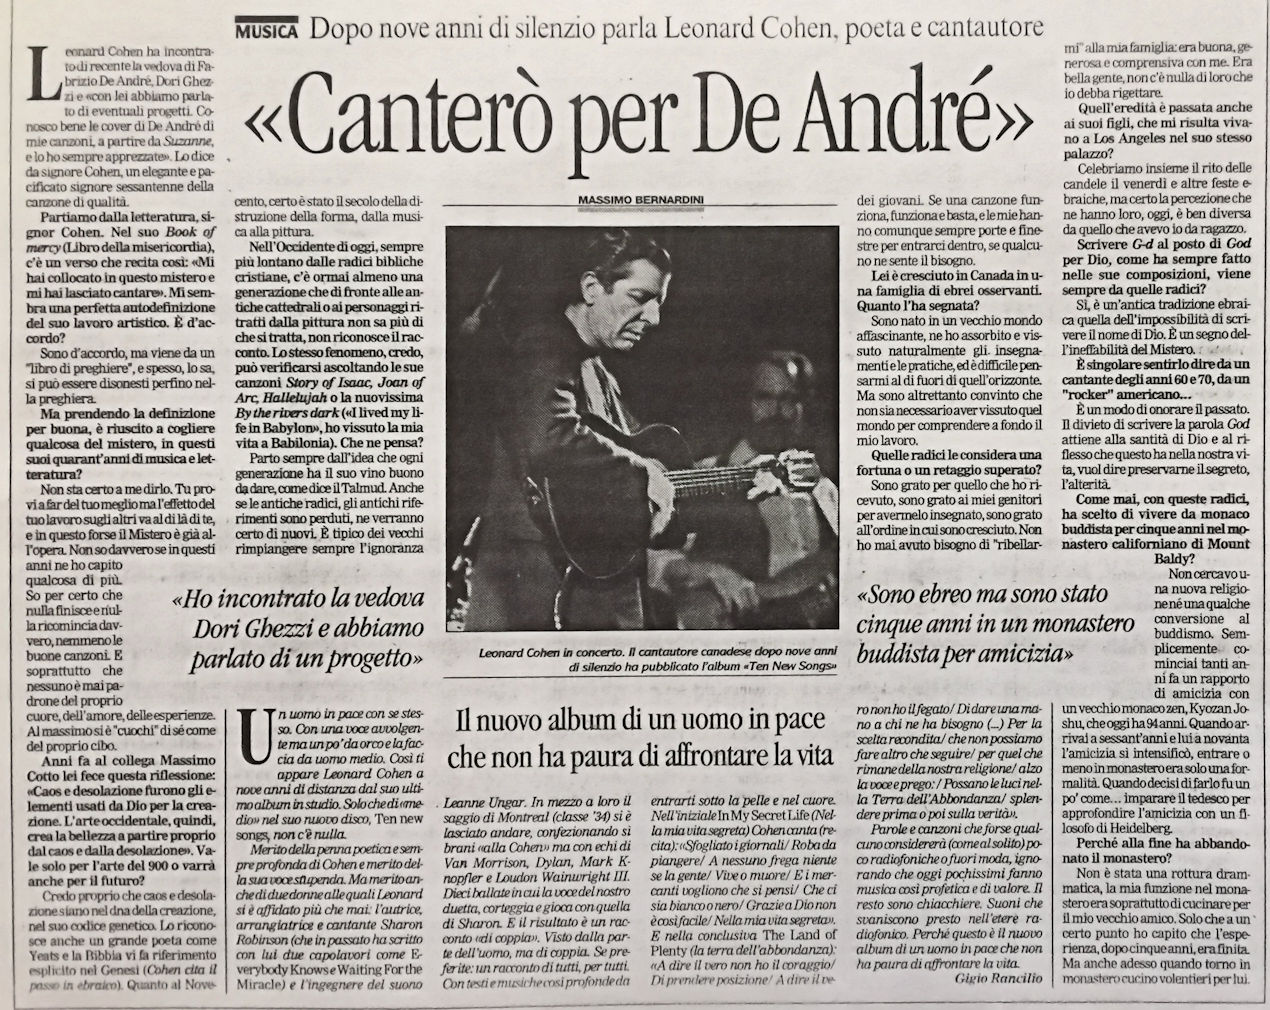 Fabrizio De André, cantautore, a cura di Mariano Brustio